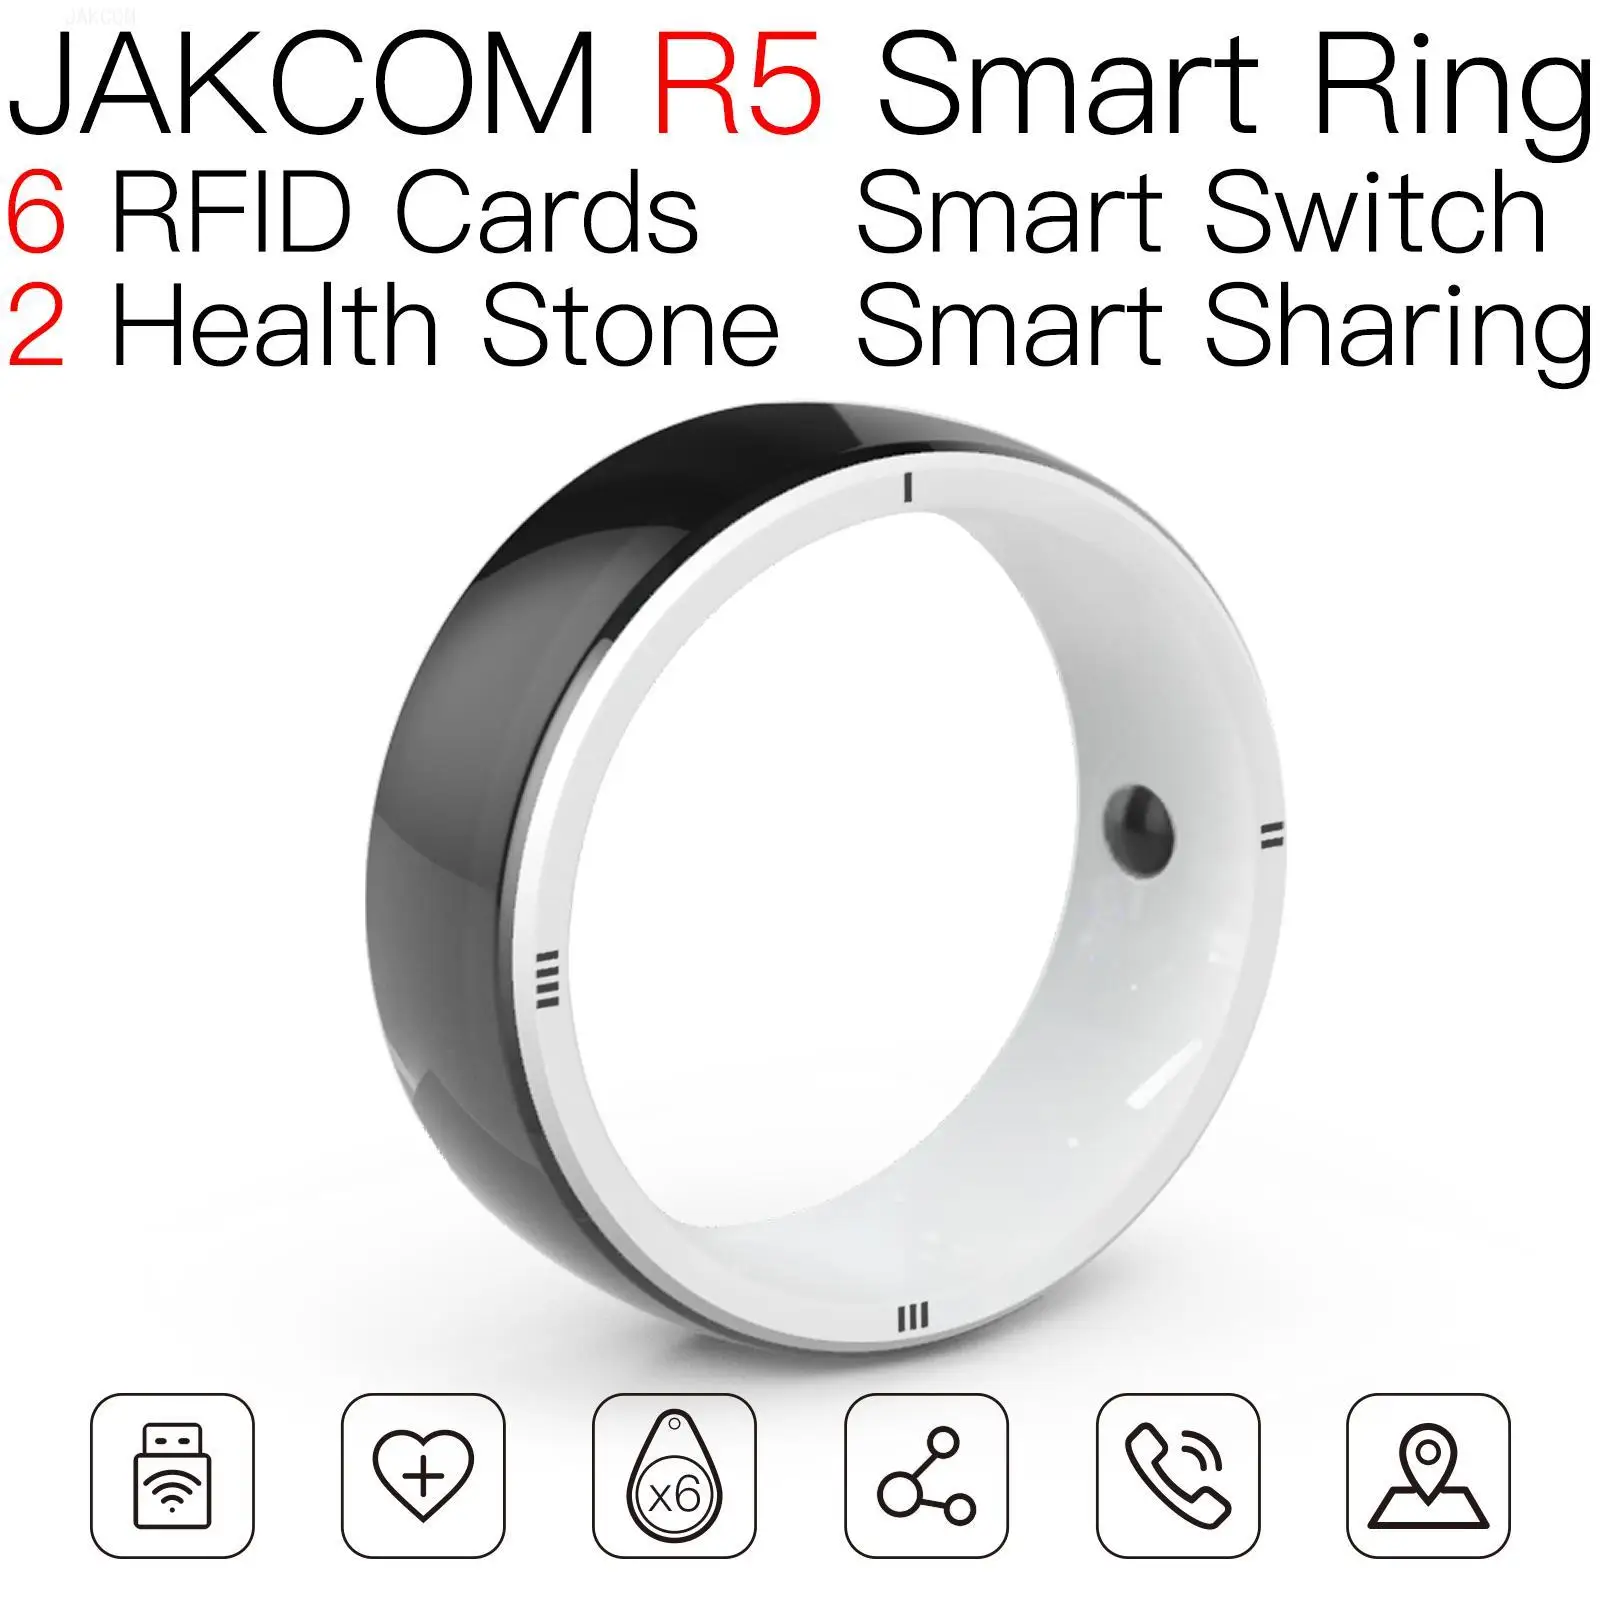 

Умное кольцо JAKCOM R5, Новое поступление, с эмблемой карты hunter, умная бирка для nfs rfid mix eeprom, Бесконтактный платеж, чистый идентификатор